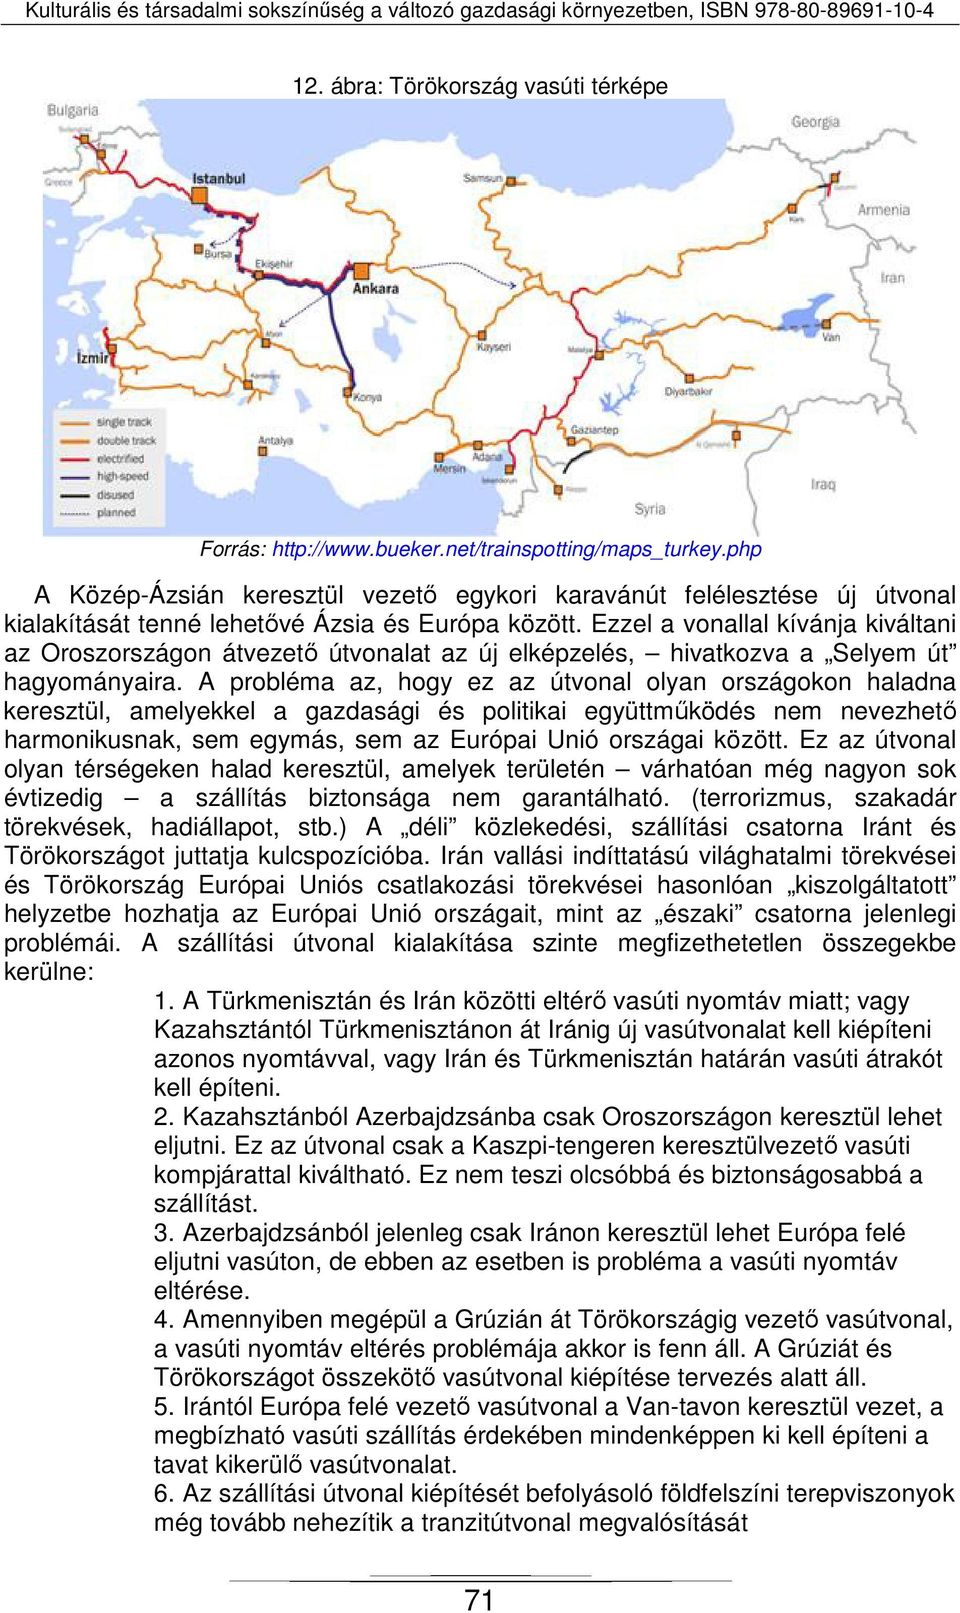 Ezzel a vonallal kívánja kiváltani az Oroszországon átvezető útvonalat az új elképzelés, hivatkozva a Selyem út hagyományaira.